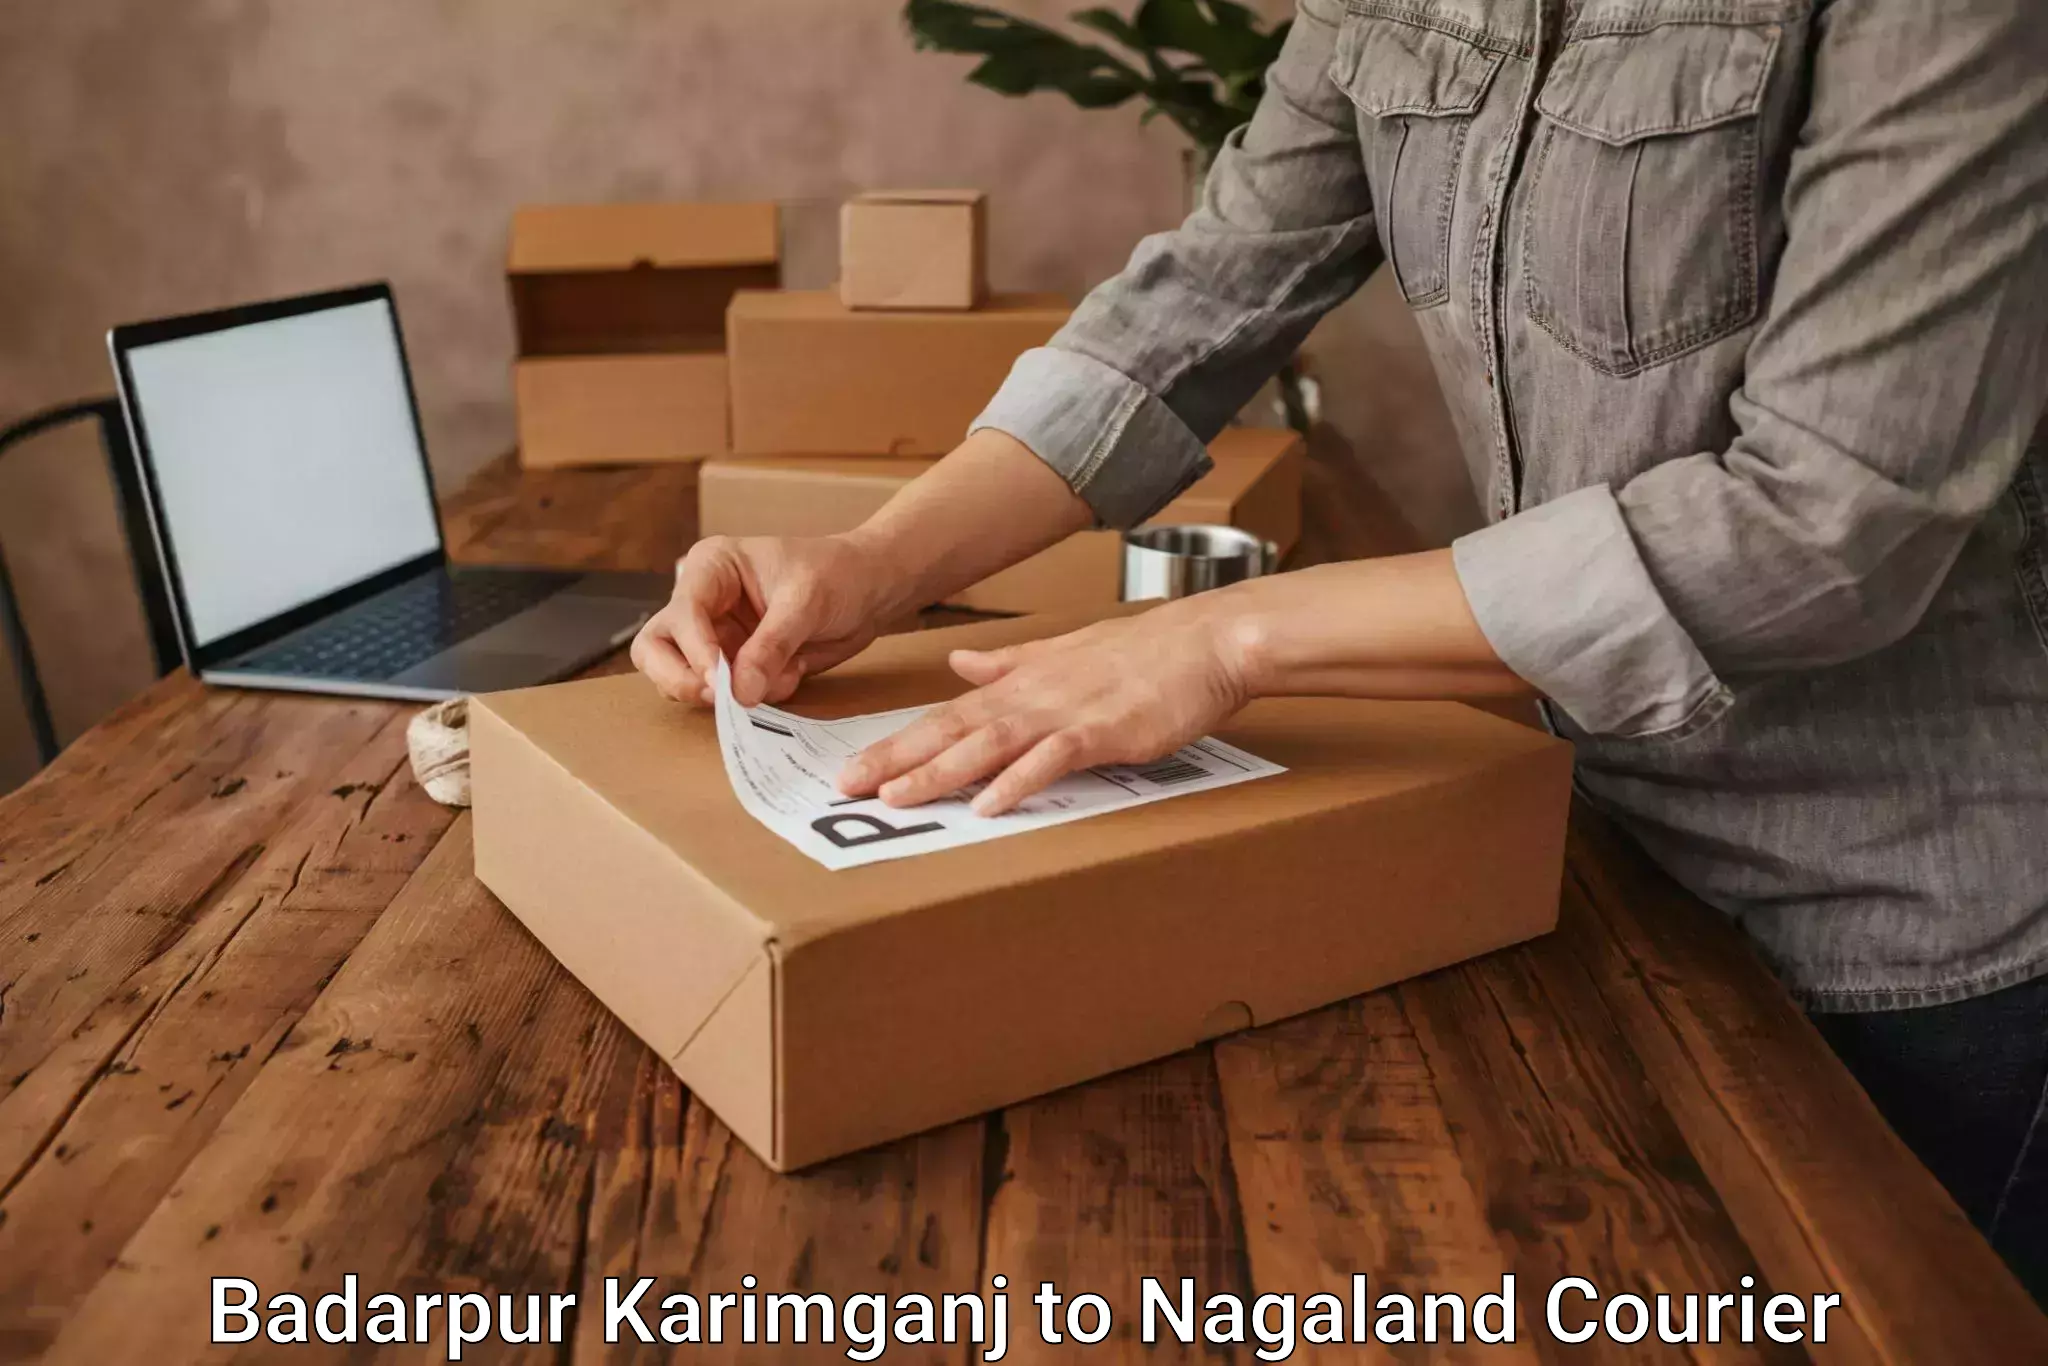 Quality courier services Badarpur Karimganj to Nagaland